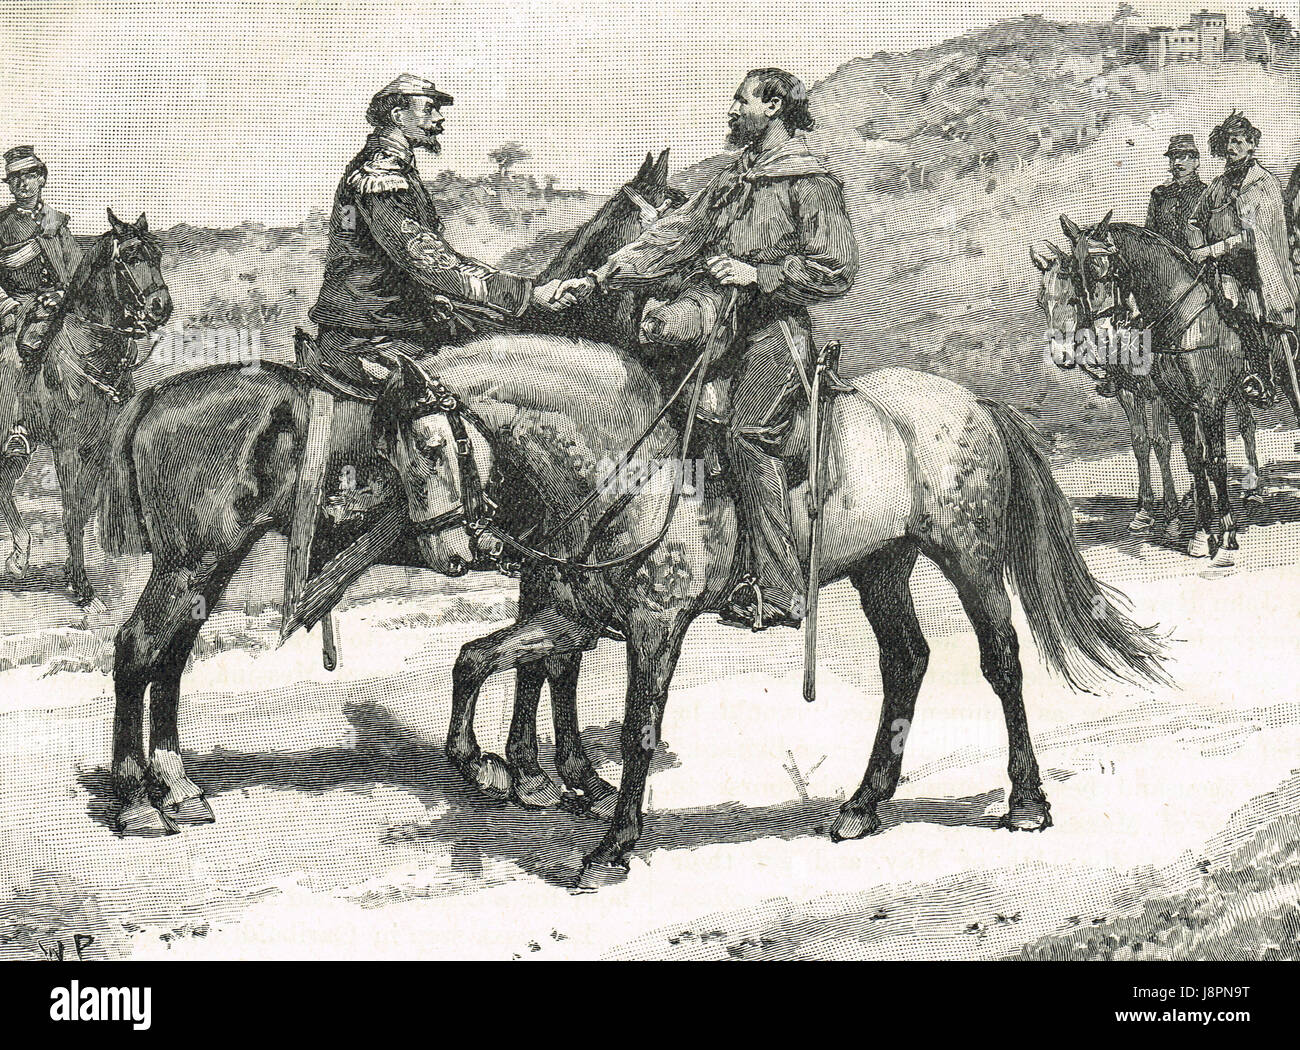 Sitzung des Garibaldi & Victor Emmanuel in Teano, 1860 Stockfoto